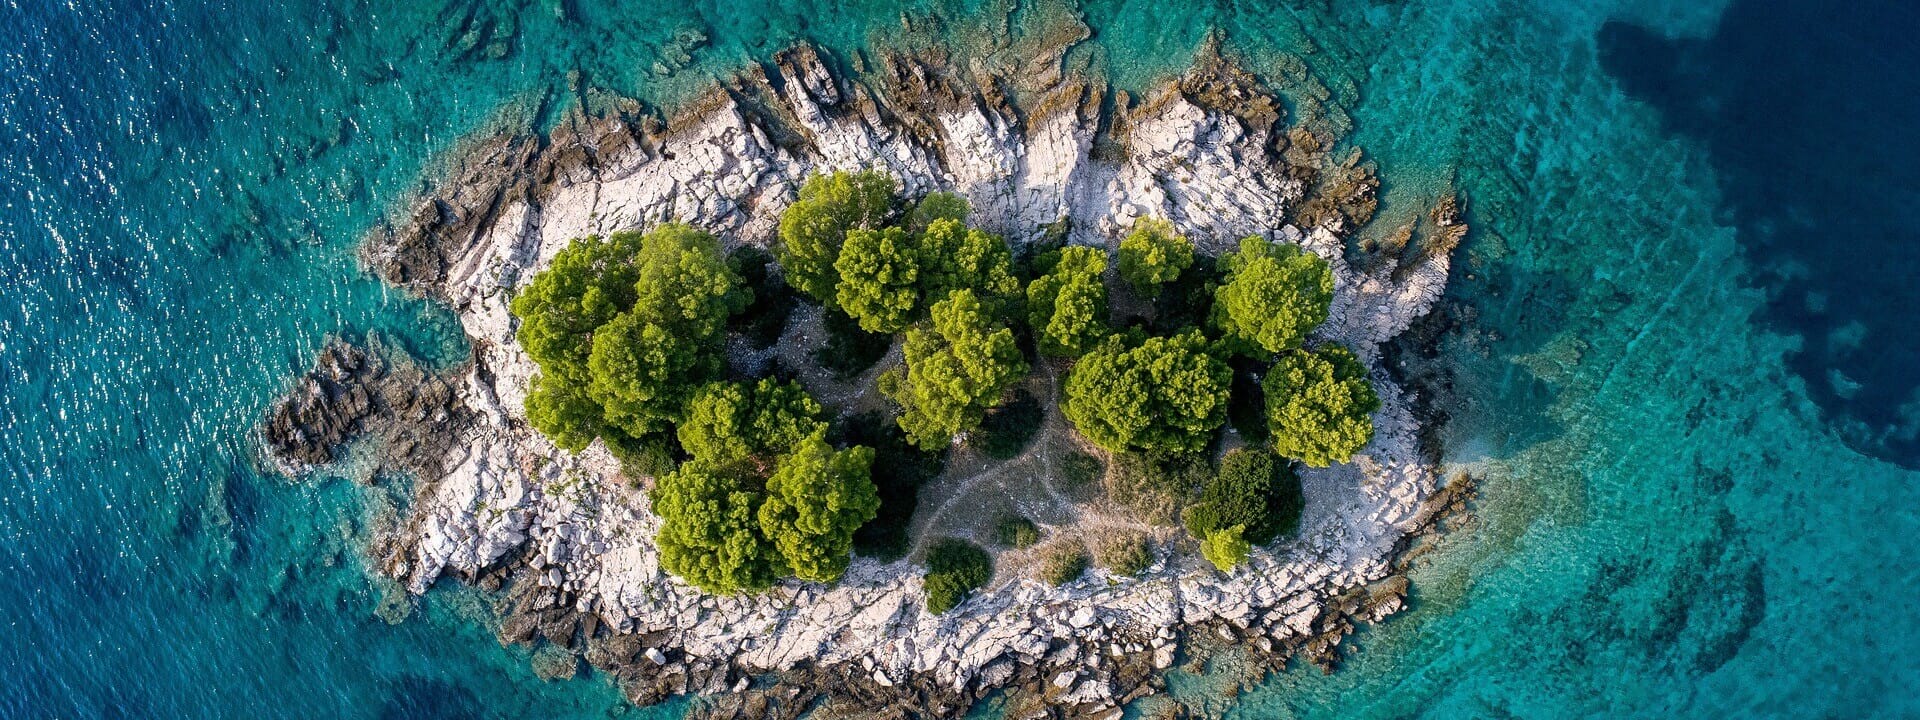 Explore Croatia Islands with Split Tours